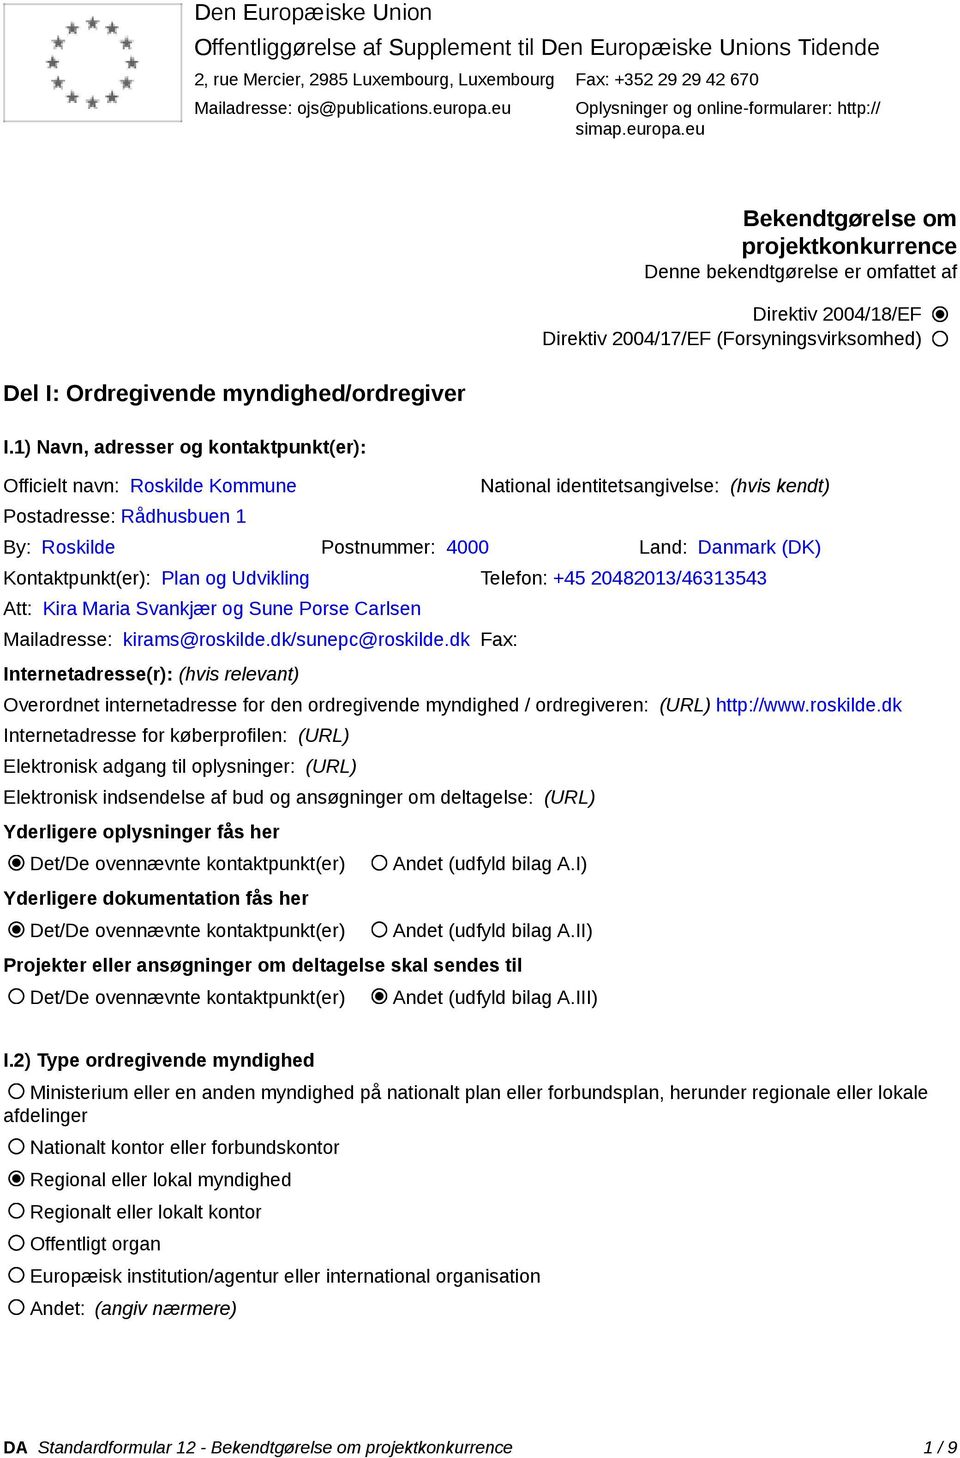 1) Navn, adresser og kontaktpunkt(er): Officielt navn: Roskilde Kommune Postadresse: Rådhusbuen 1 Bekendtgørelse om projektkonkurrence Denne bekendtgørelse er omfattet af Direktiv 2004/18/EF Direktiv